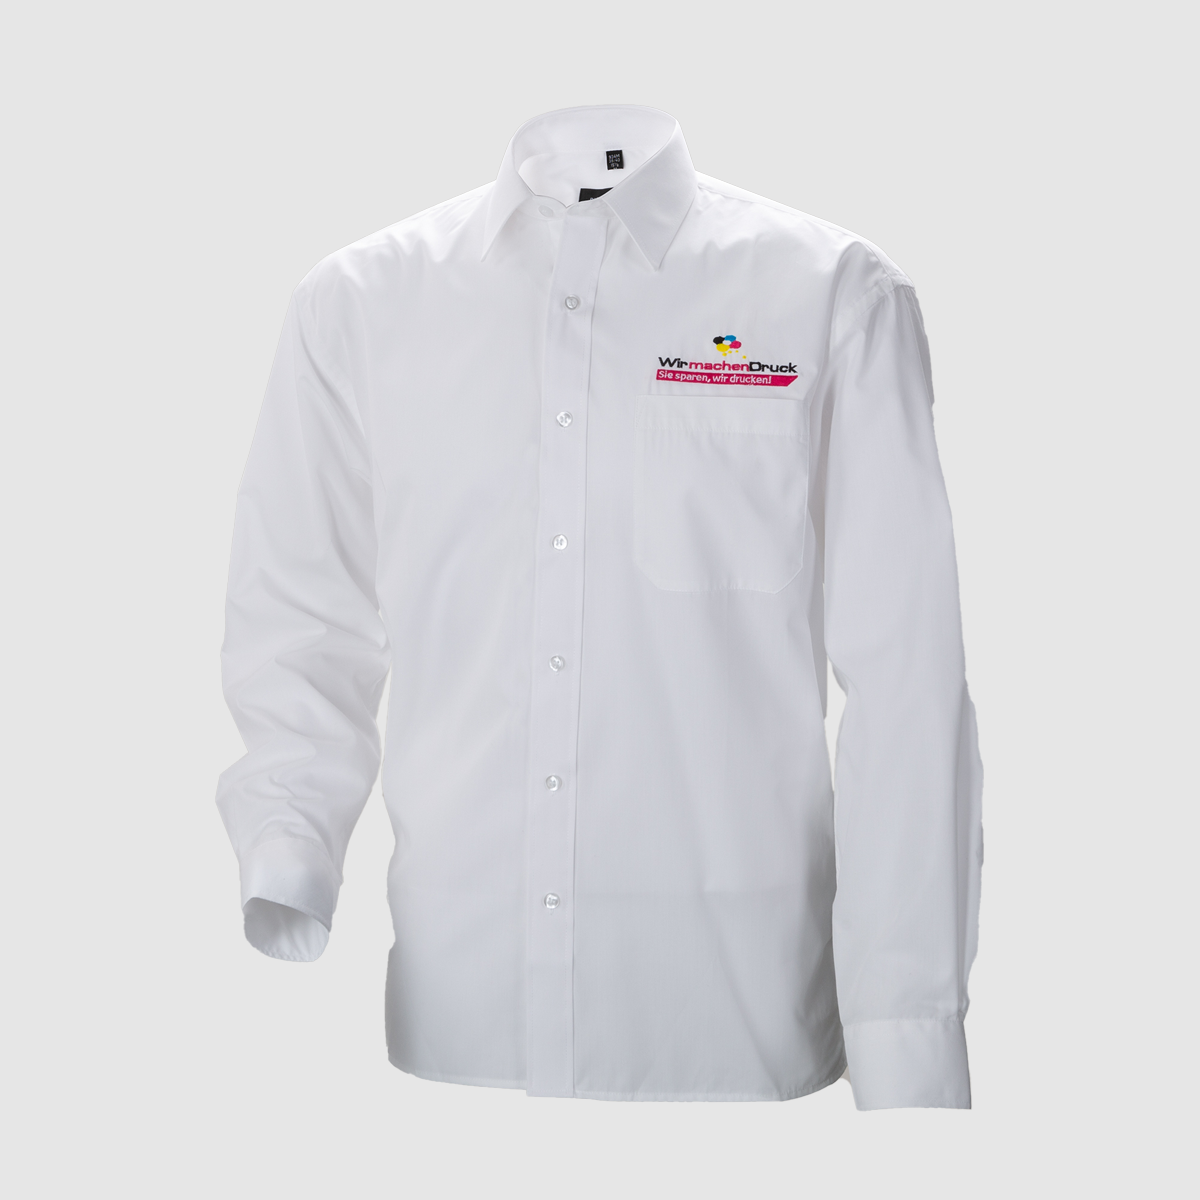 Hochwertiges, weißes Hemd mit langen Ärmeln und individueller Stickerei